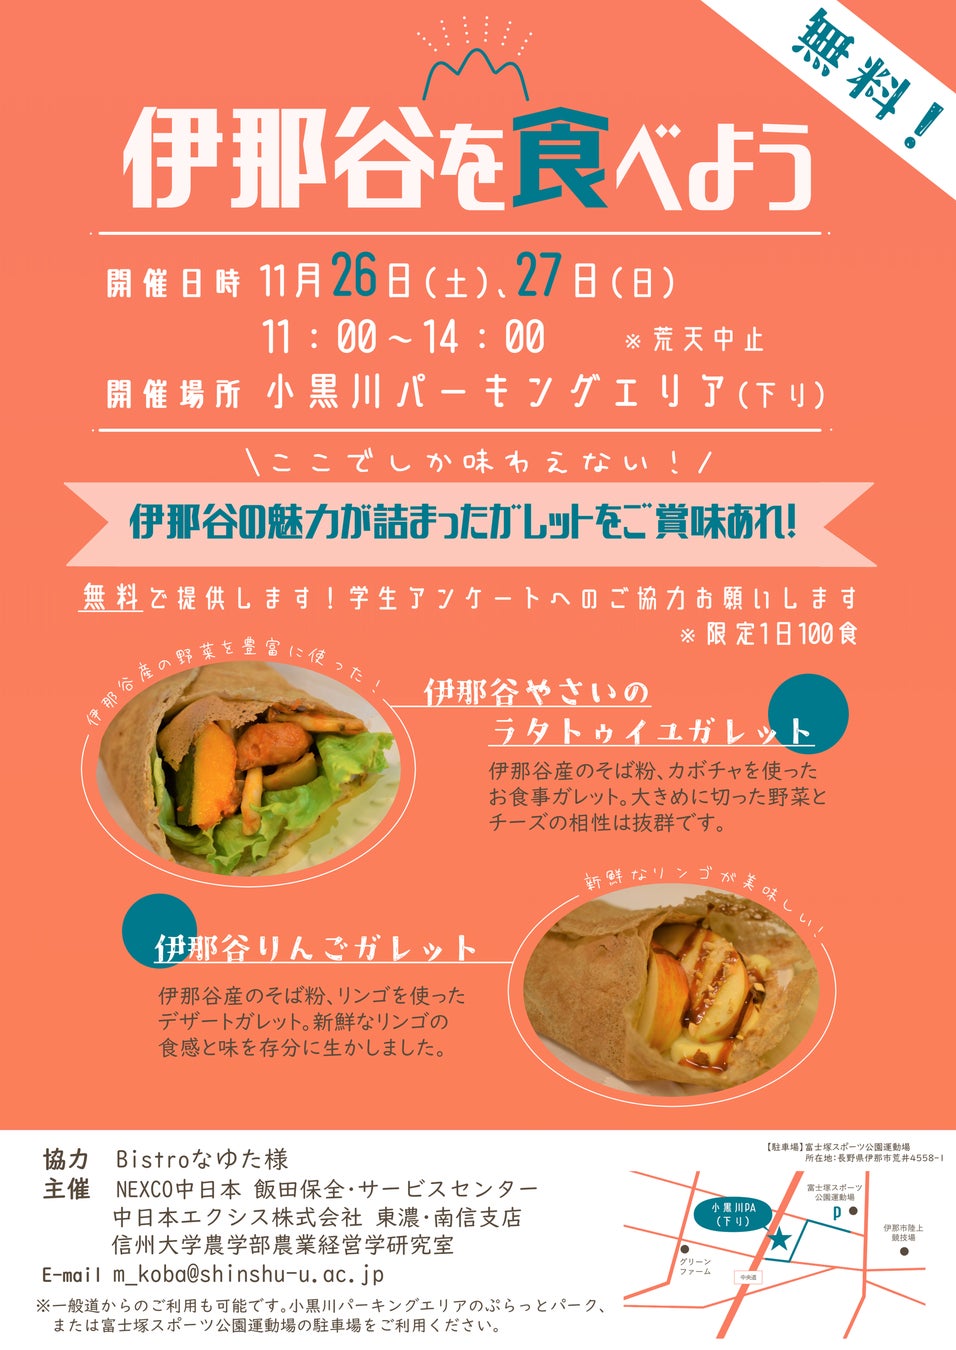 E19 中央道 小黒川PA（下り）で地域連携イベント「伊那谷を食べよう！」を開催します